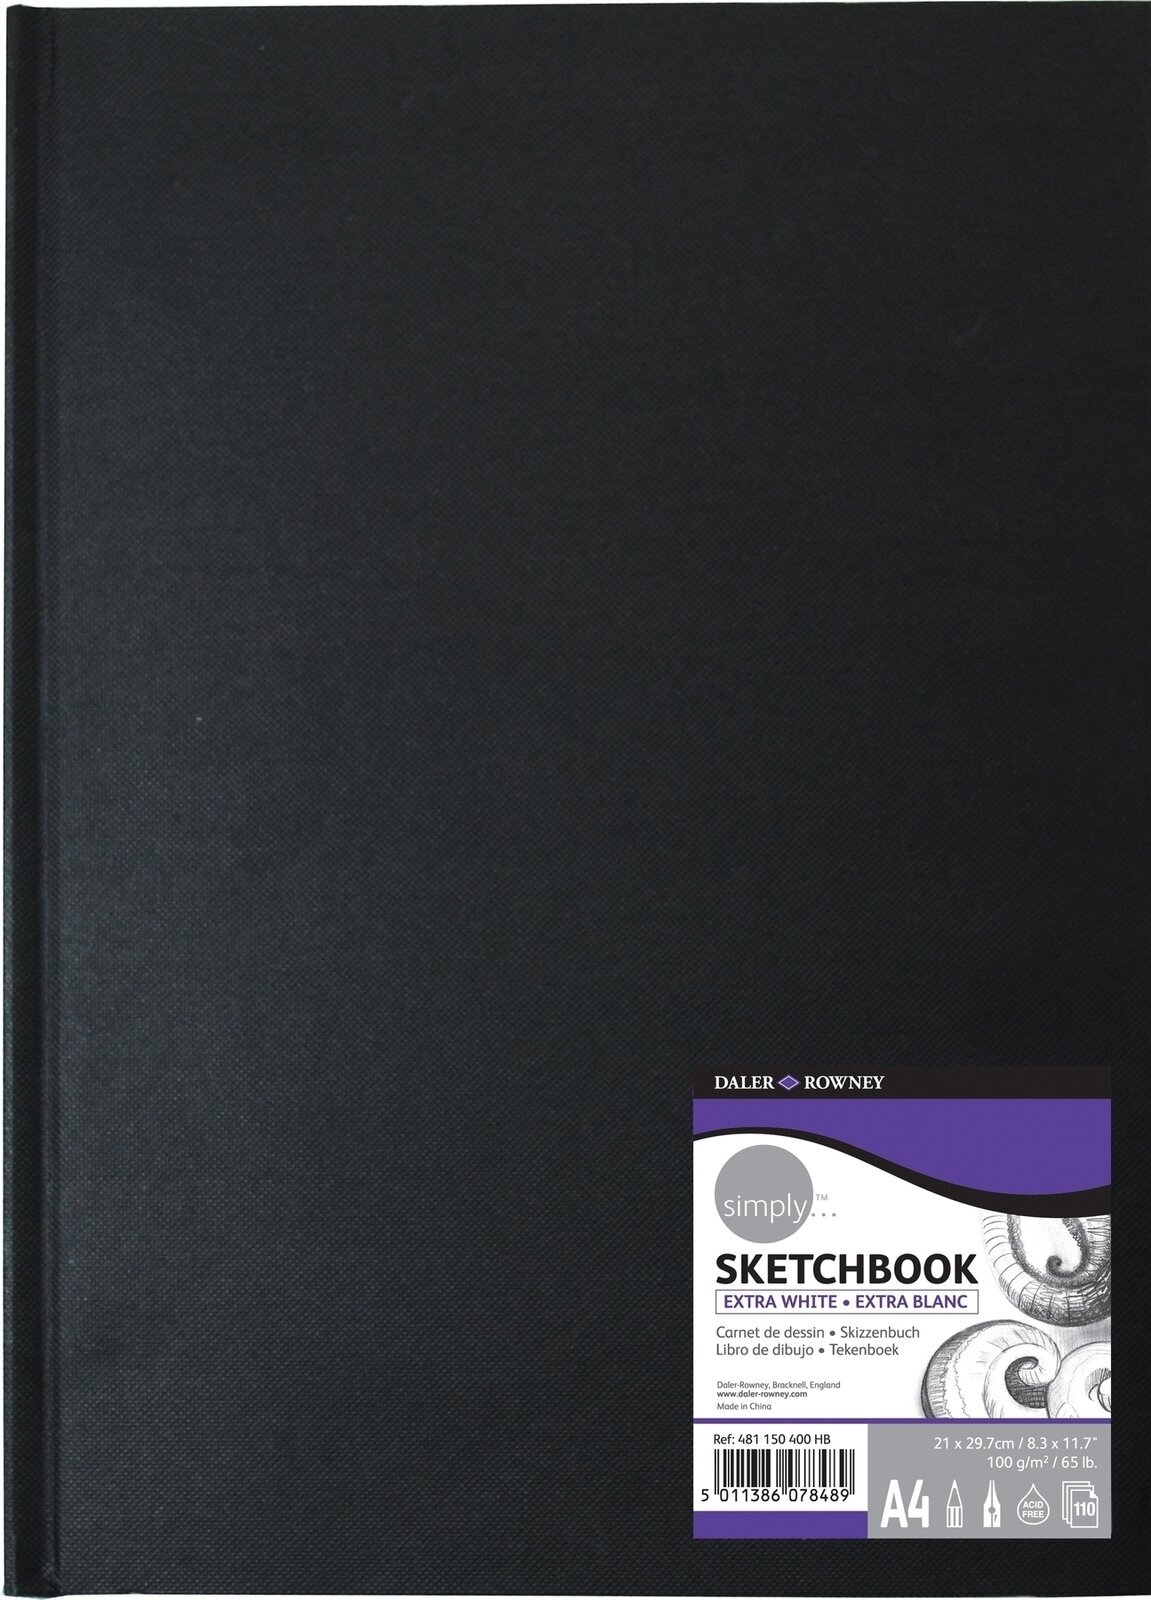 Vázlattömb Daler Rowney Simply Sketchbook Simply A4 100 g Black Vázlattömb